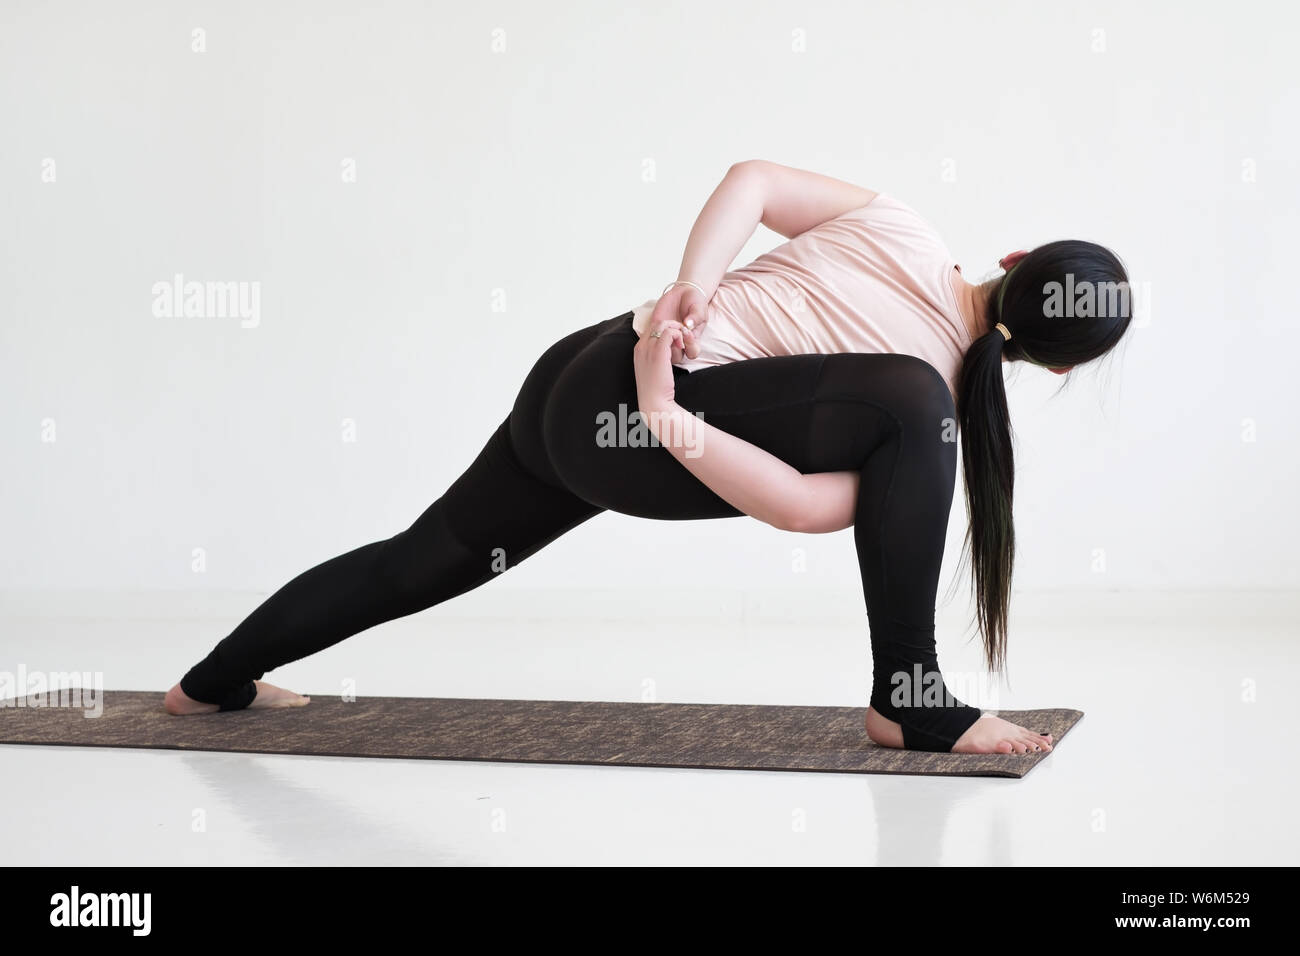 yoga side angle